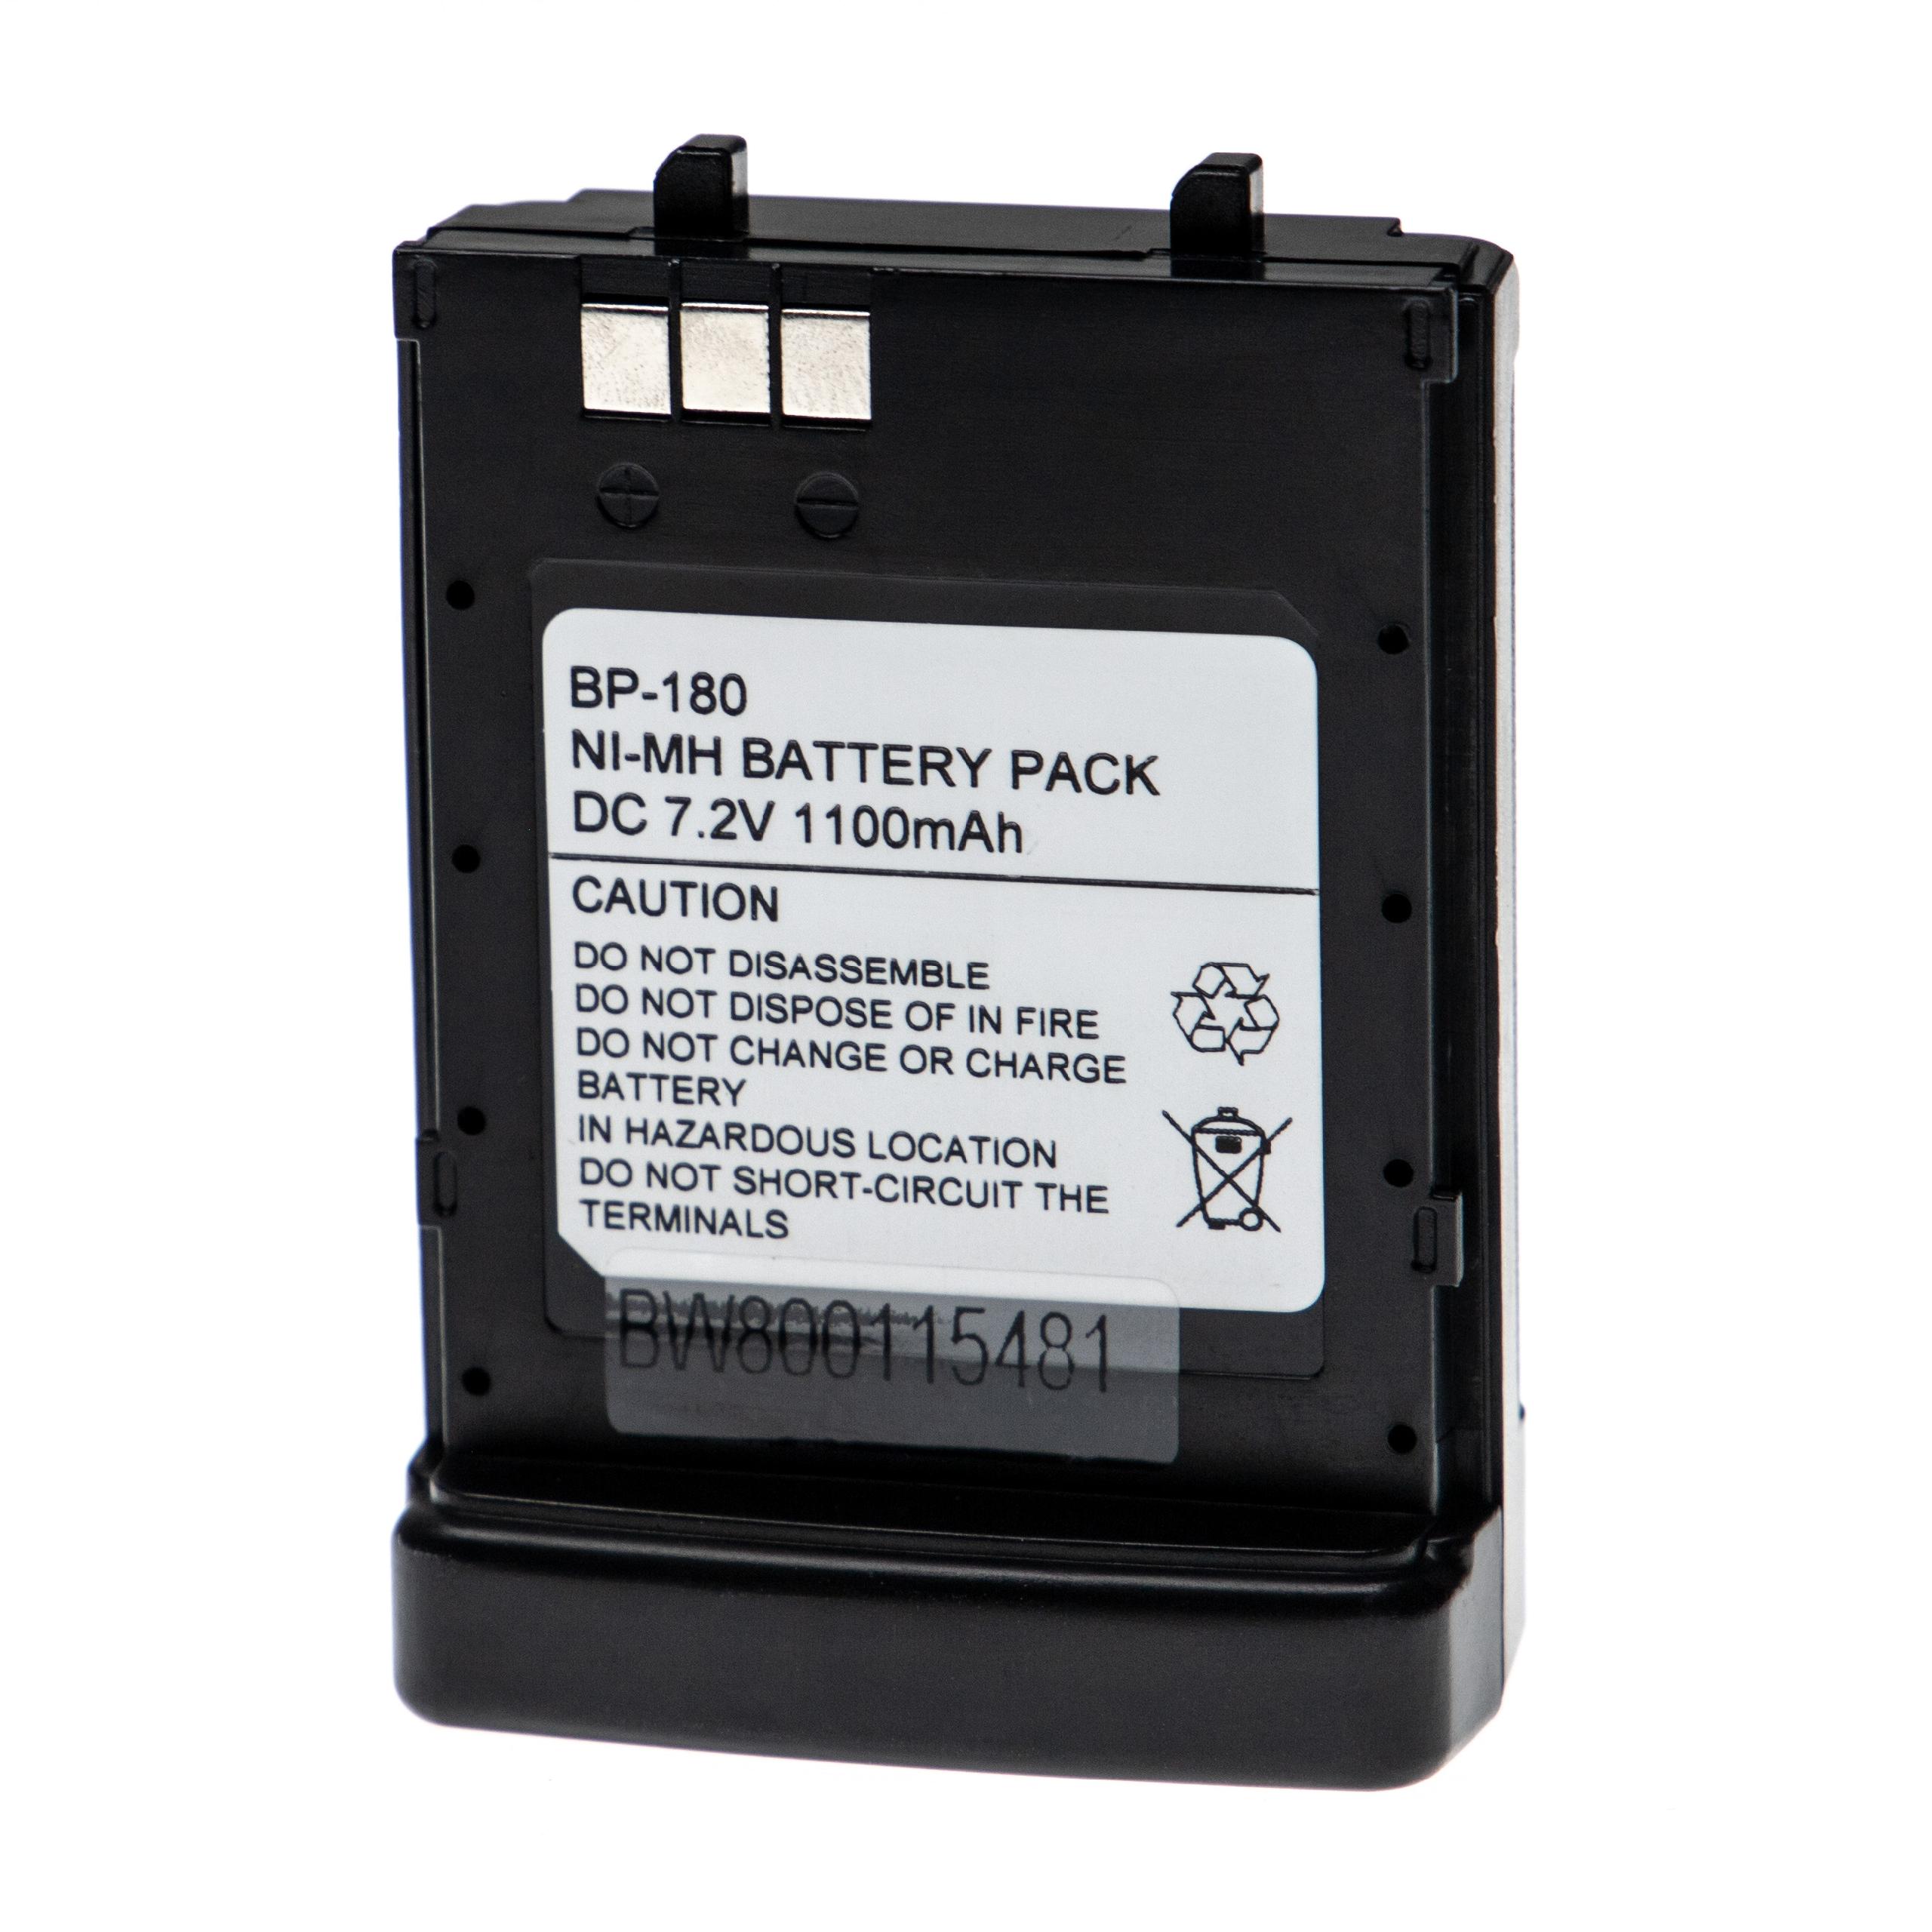 Batterie remplace Icom BP-173, BP-180H, BP-180 pour radio talkie-walkie - 1100mAh 7,2V NiMH